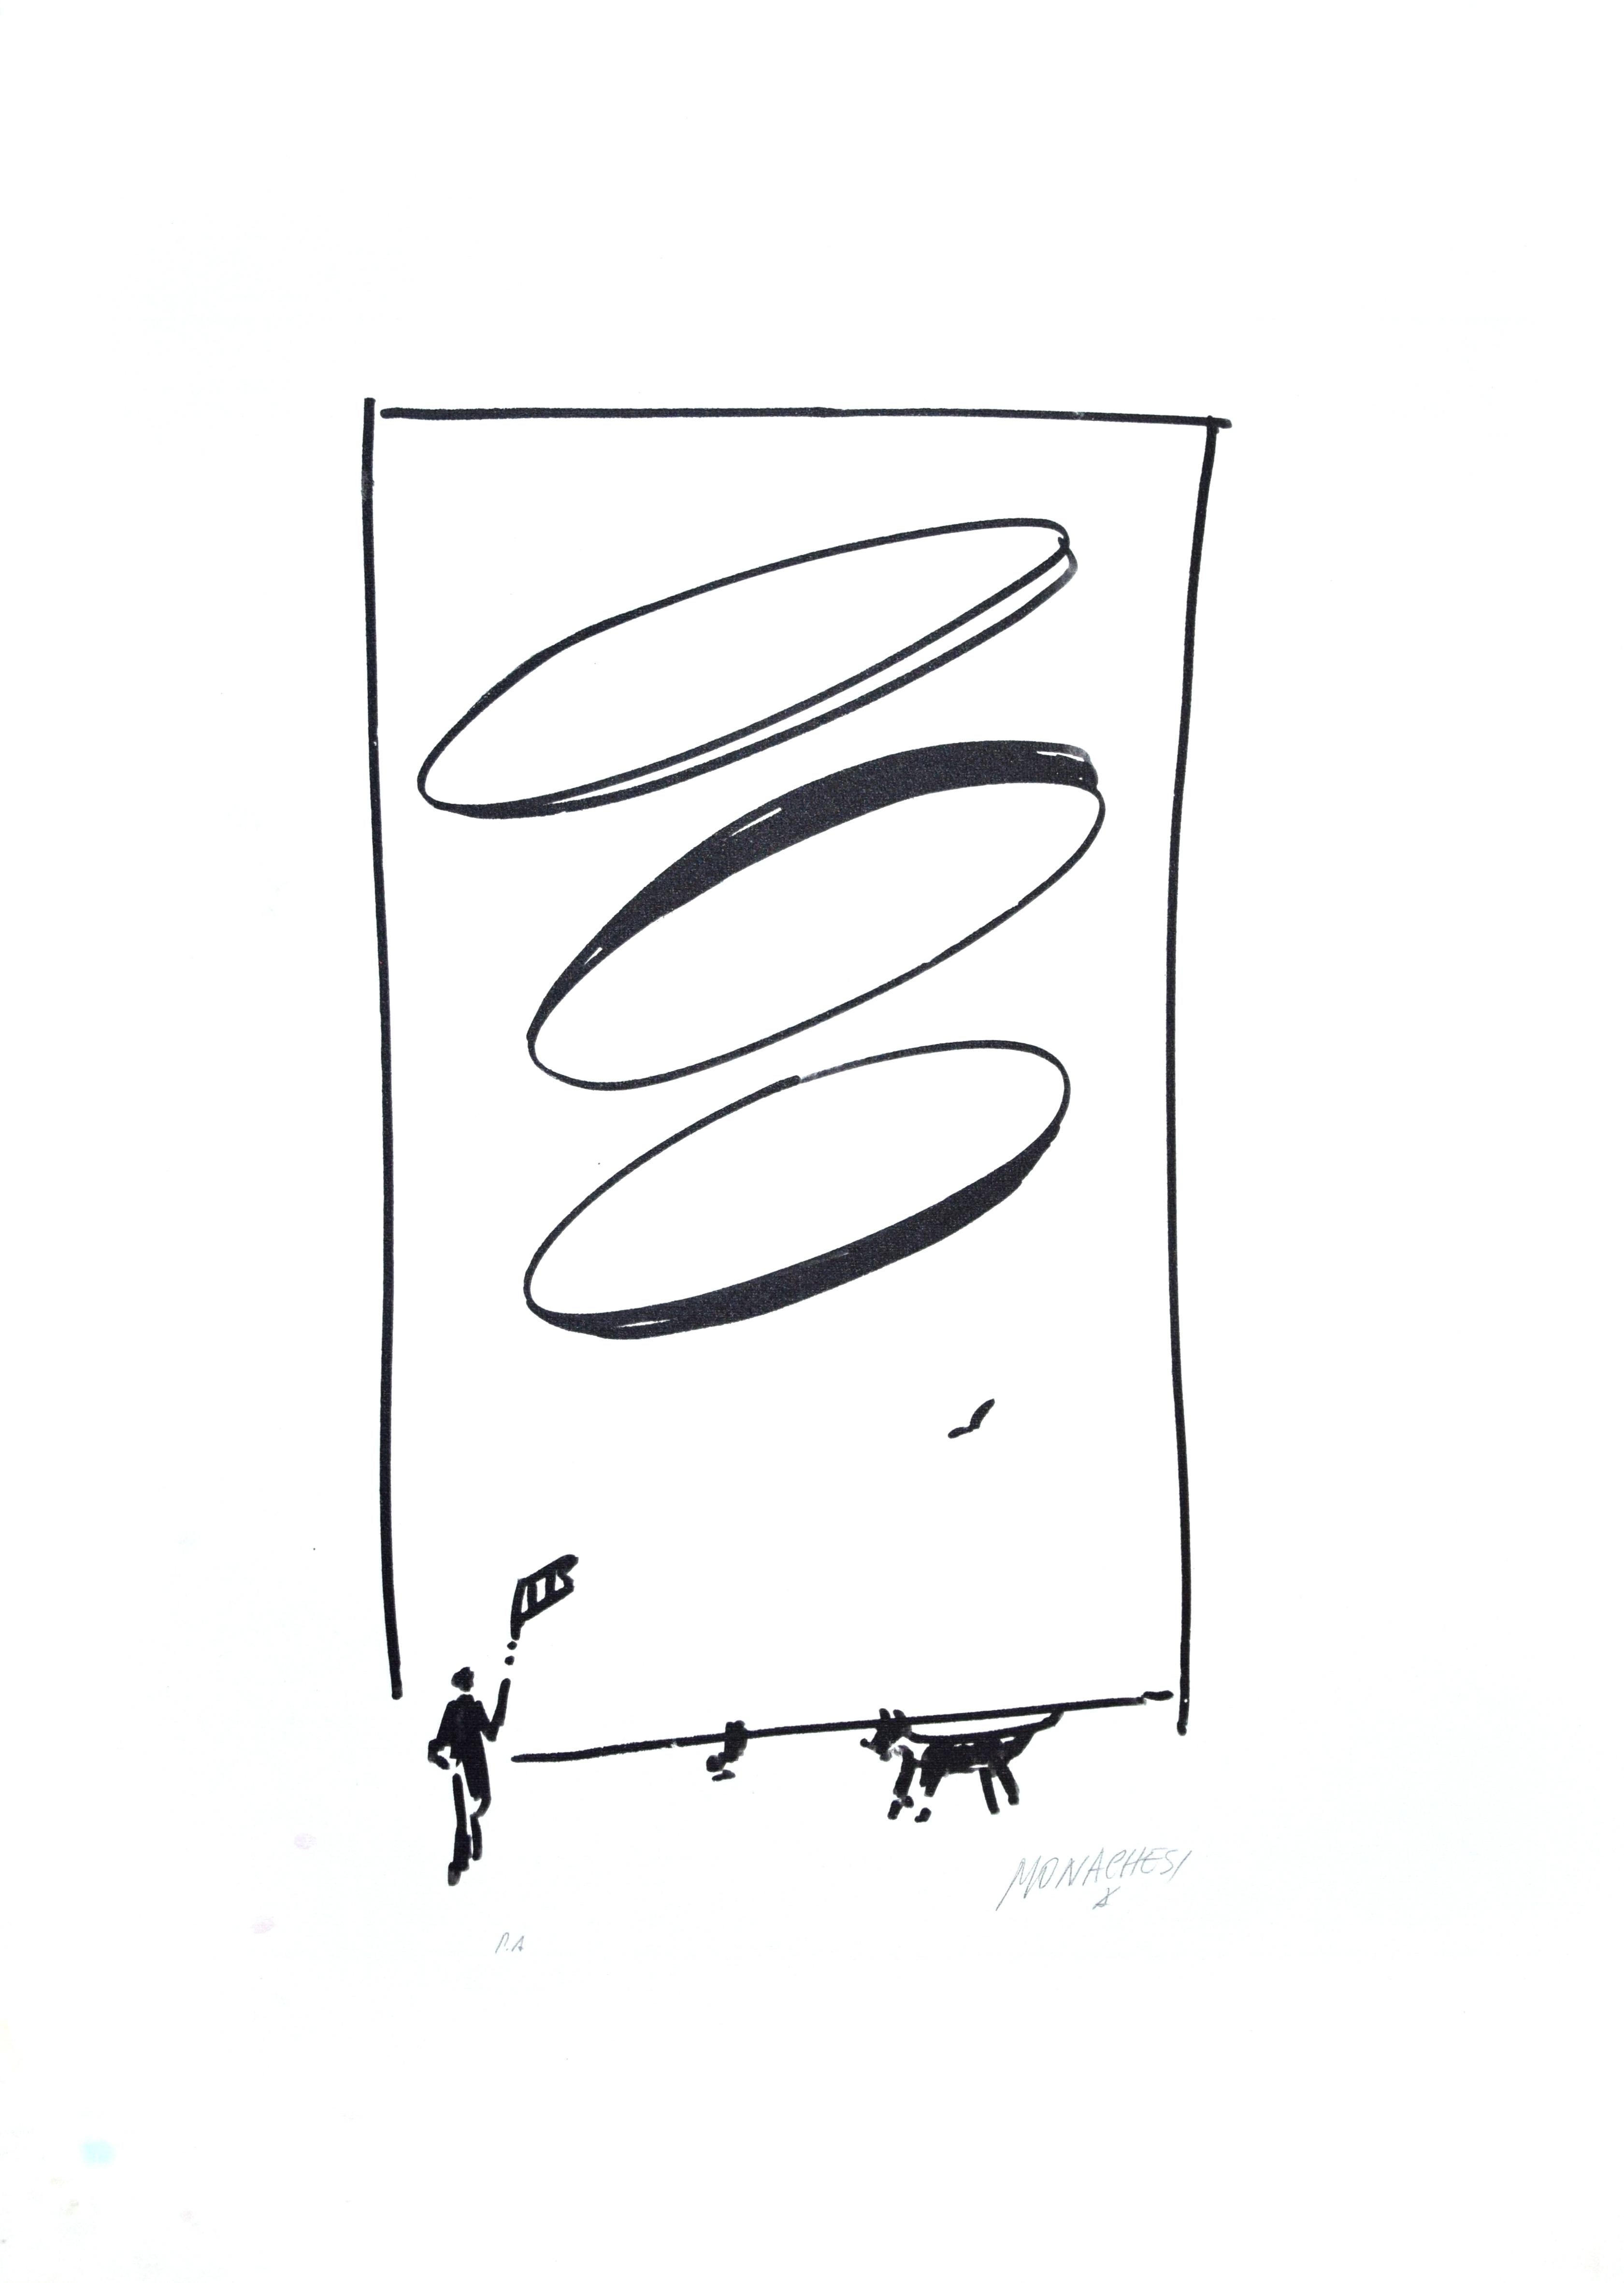 Homme et chien est une sérigraphie originale en noir et blanc réalisée par Sante Monachesi.
Signé à la main au crayon par l'artiste en bas à droite. Épreuve d'artiste.
Très bonnes conditions..

Cette œuvre d'art originale représente une composition